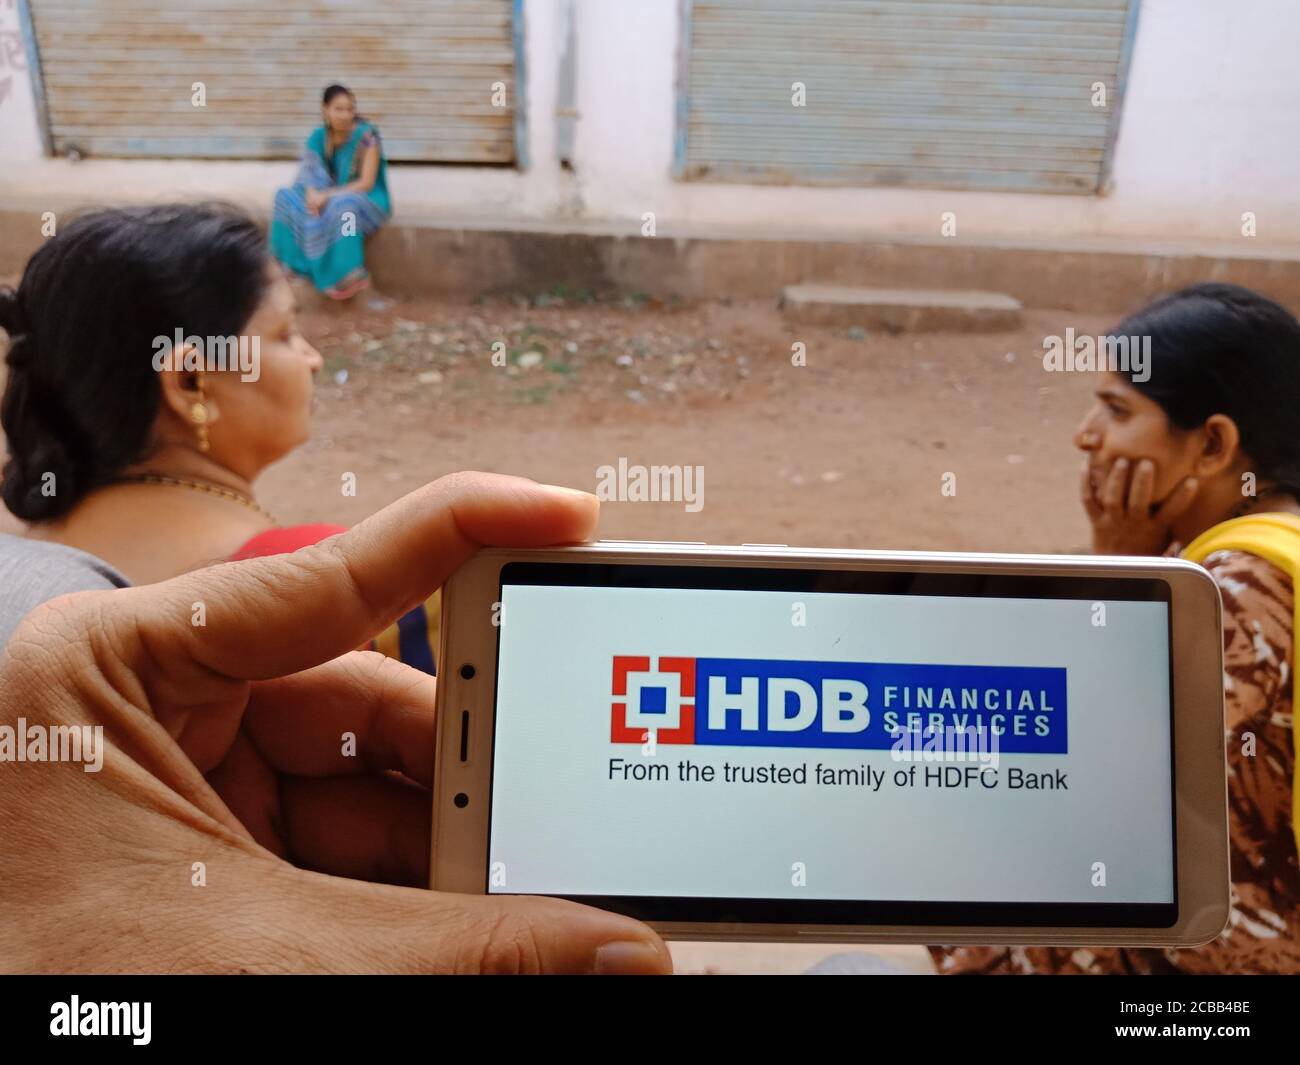 DISTRETTO KATNI, INDIA - 02 GIUGNO 2020: Una donna indiana che tiene uno smartphone con visualizzazione HDB Financial Services logo sullo schermo, moderno educa bancario Foto Stock